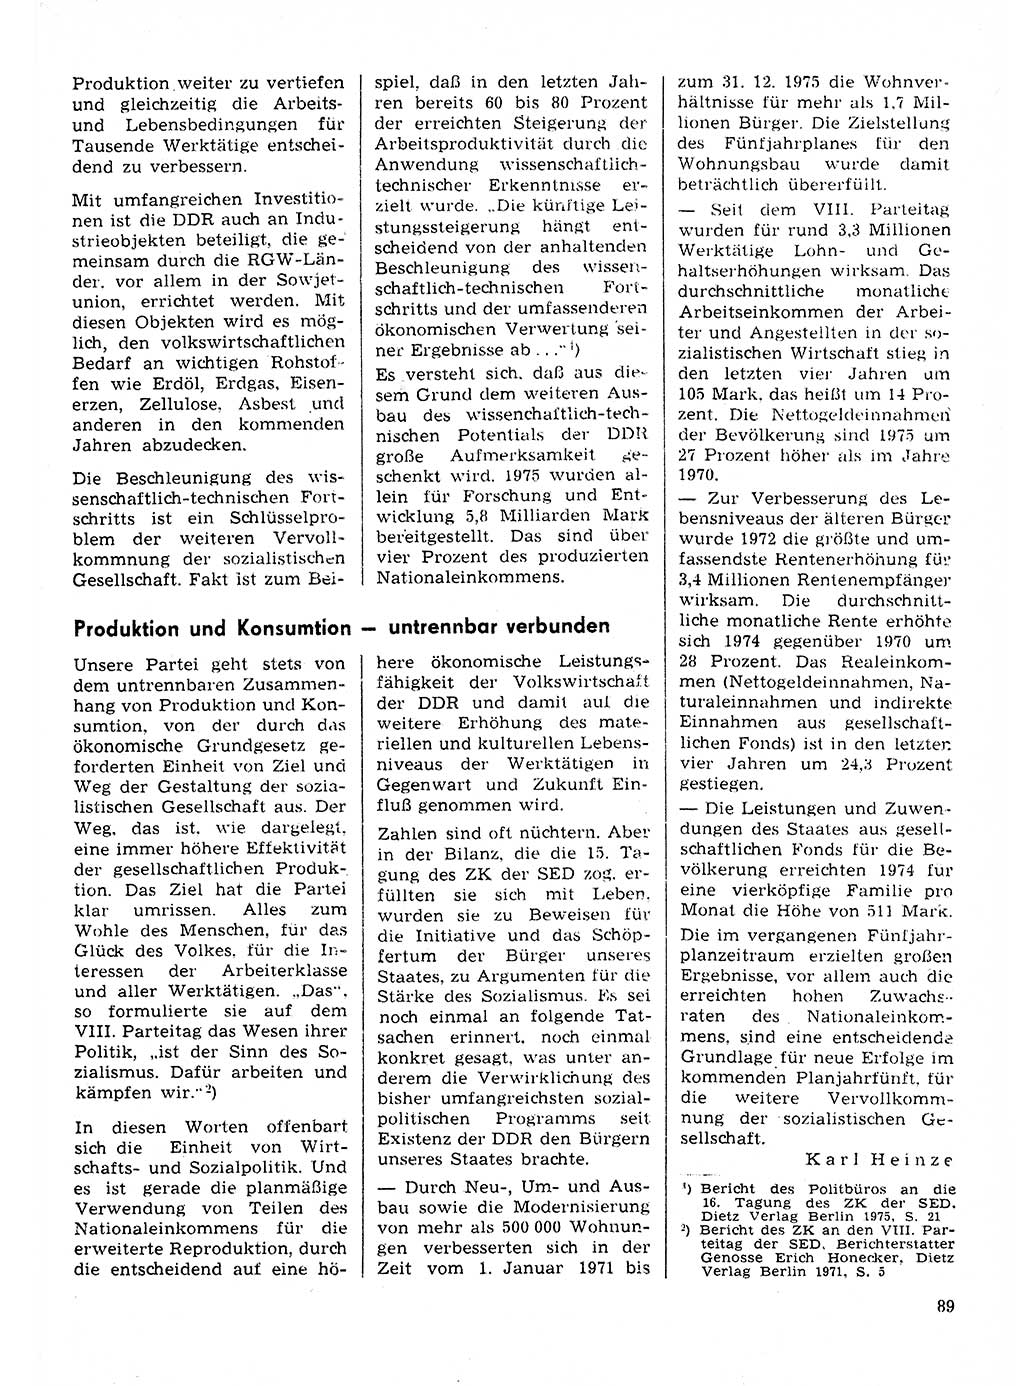 Neuer Weg (NW), Organ des Zentralkomitees (ZK) der SED (Sozialistische Einheitspartei Deutschlands) für Fragen des Parteilebens, 31. Jahrgang [Deutsche Demokratische Republik (DDR)] 1976, Seite 89 (NW ZK SED DDR 1976, S. 89)